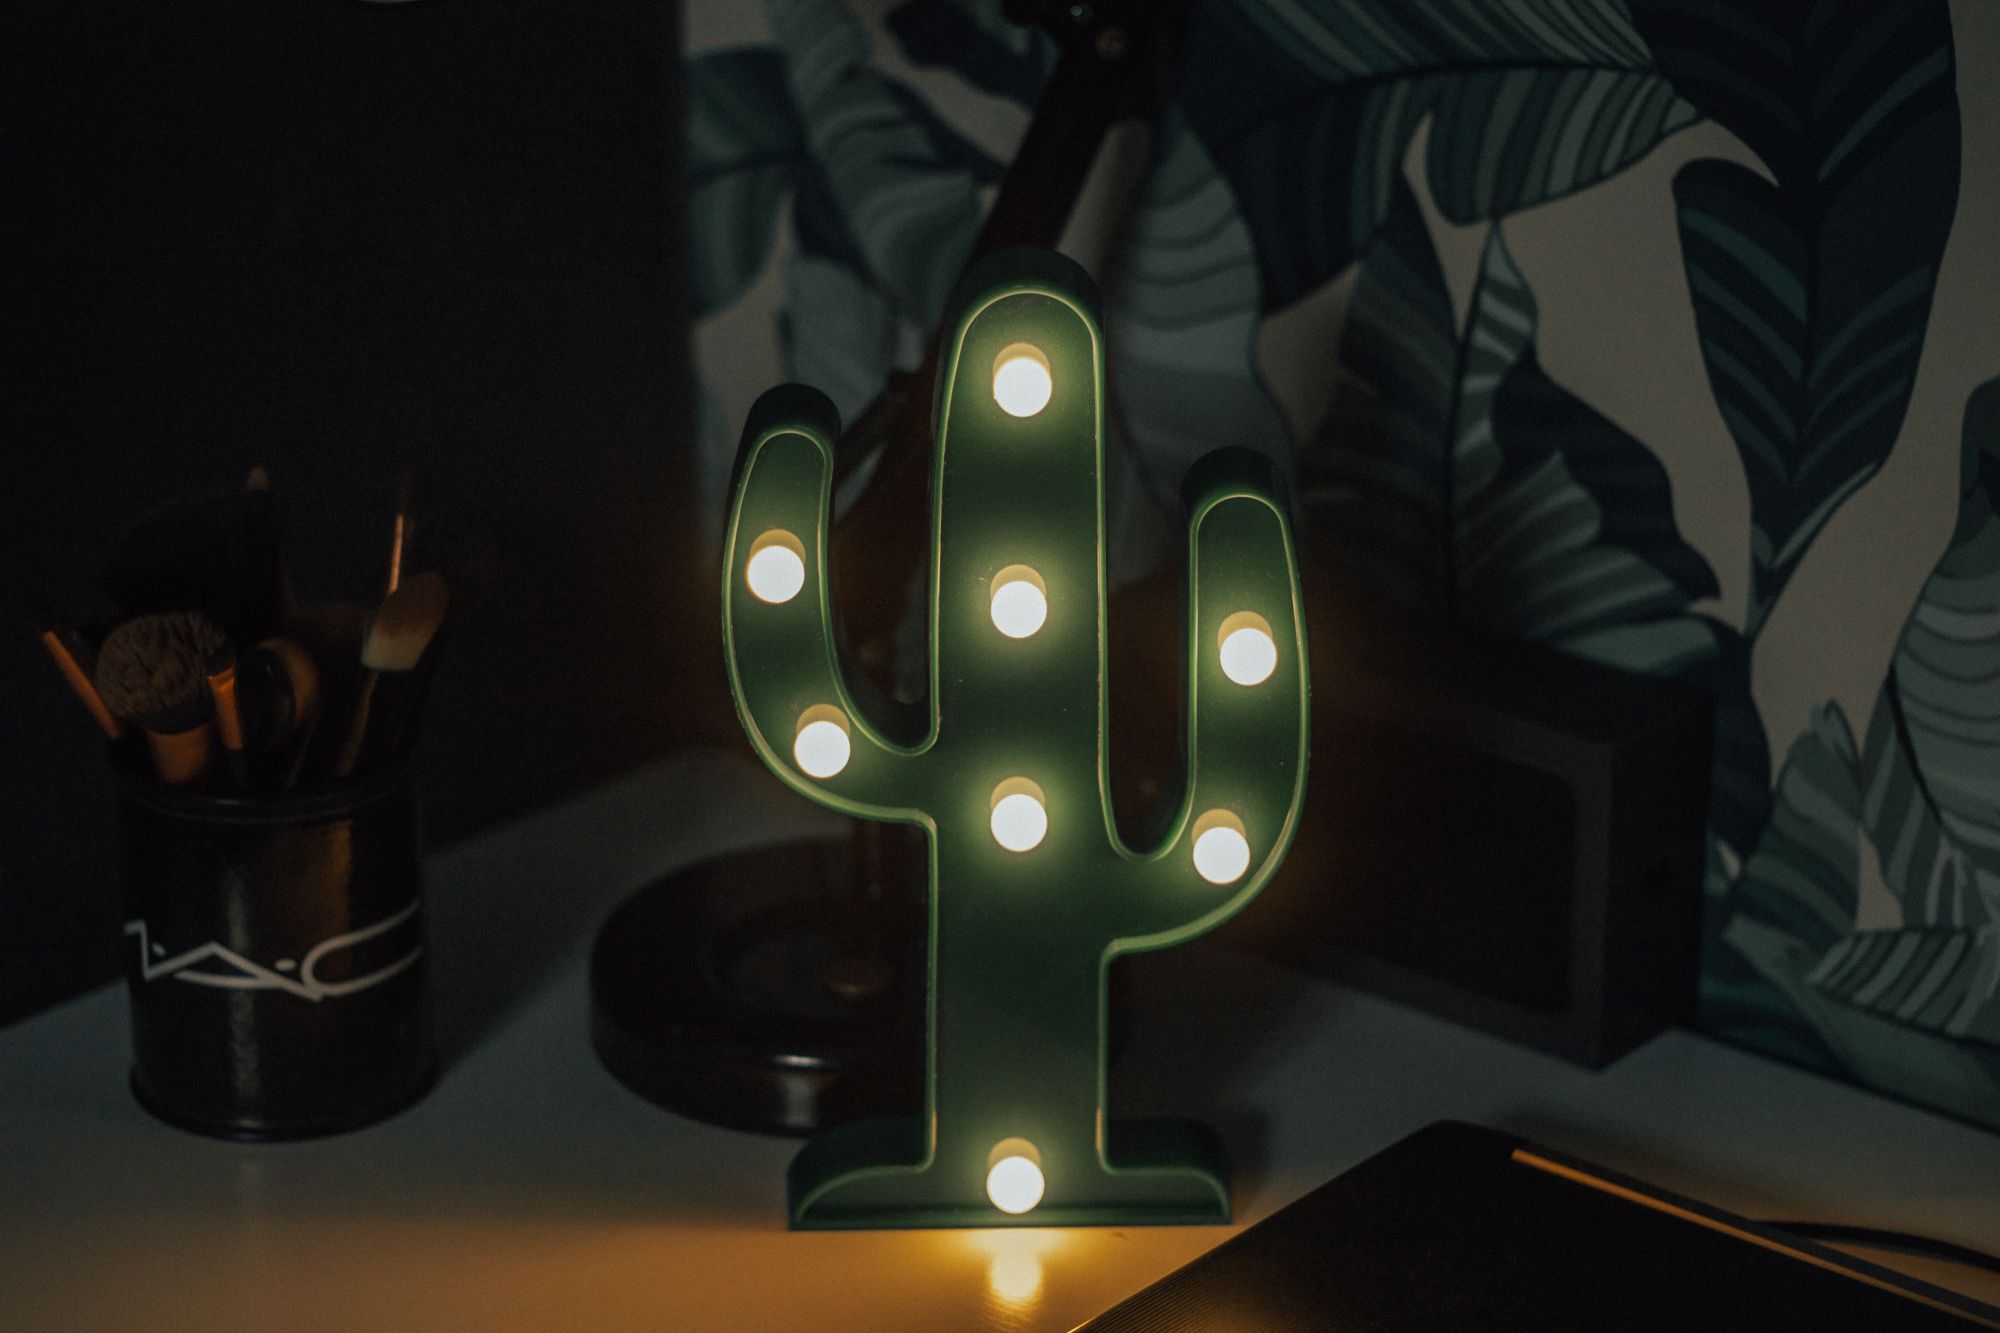 Cactus mania per luci in casa